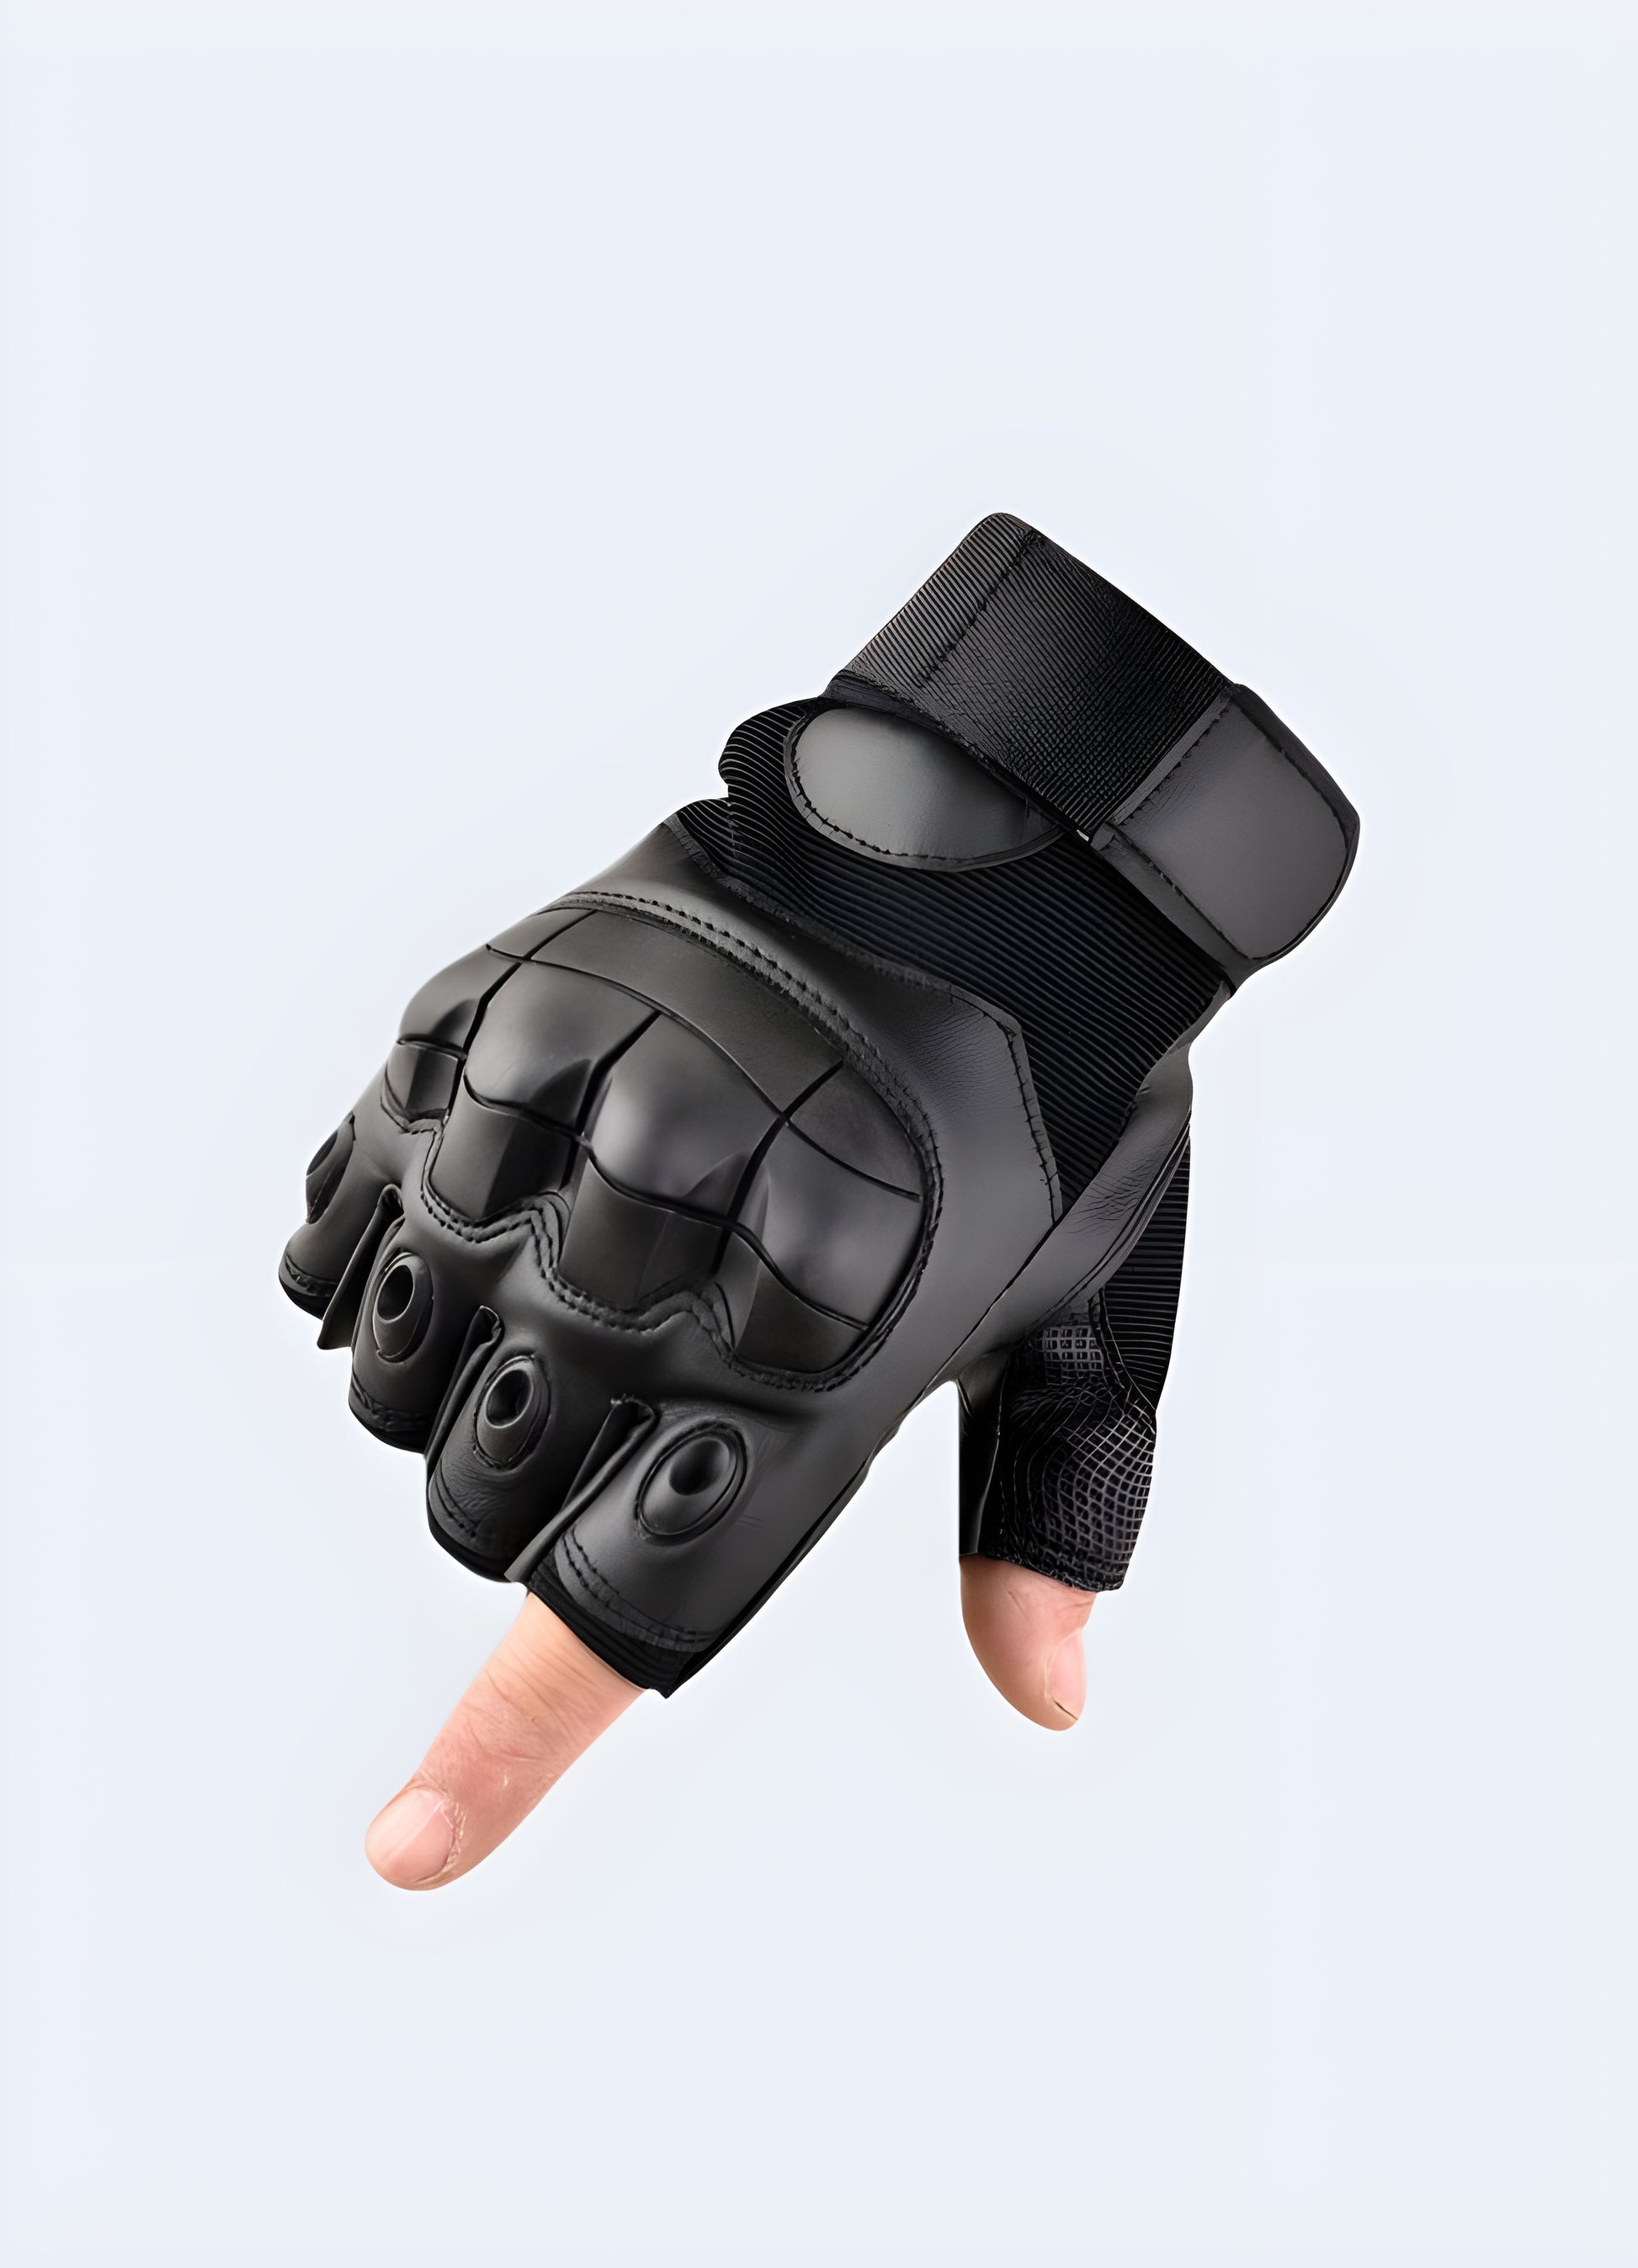 Men wearing techwear fingerless gloves black front view.